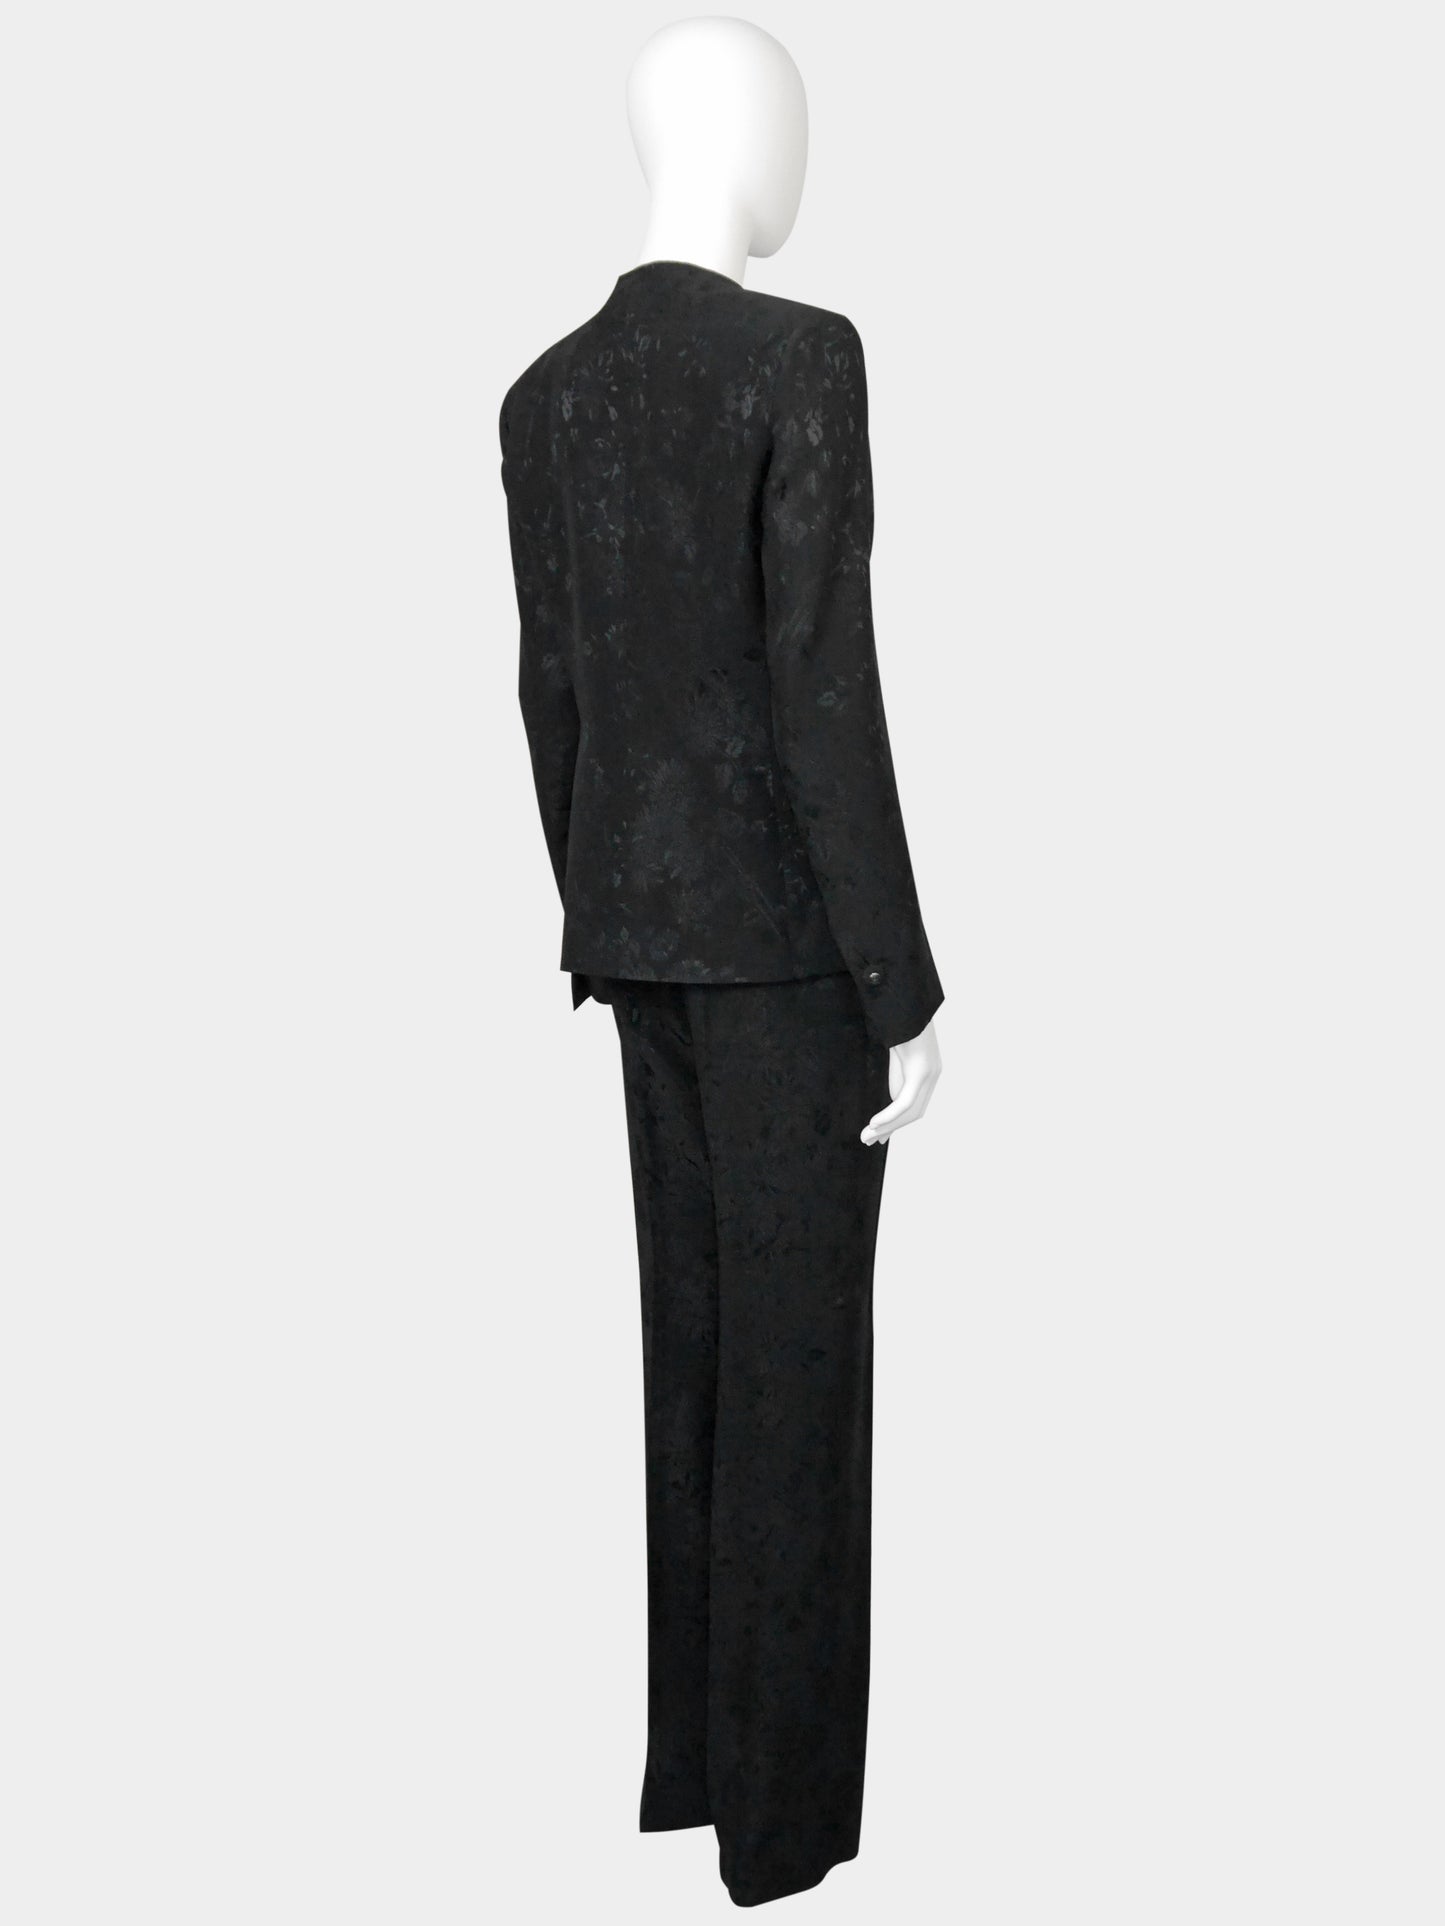 GIANNI VERSACE Couture 1990s 2000s Vintage Floral Jacquard Pants & Jacket Suit Size S